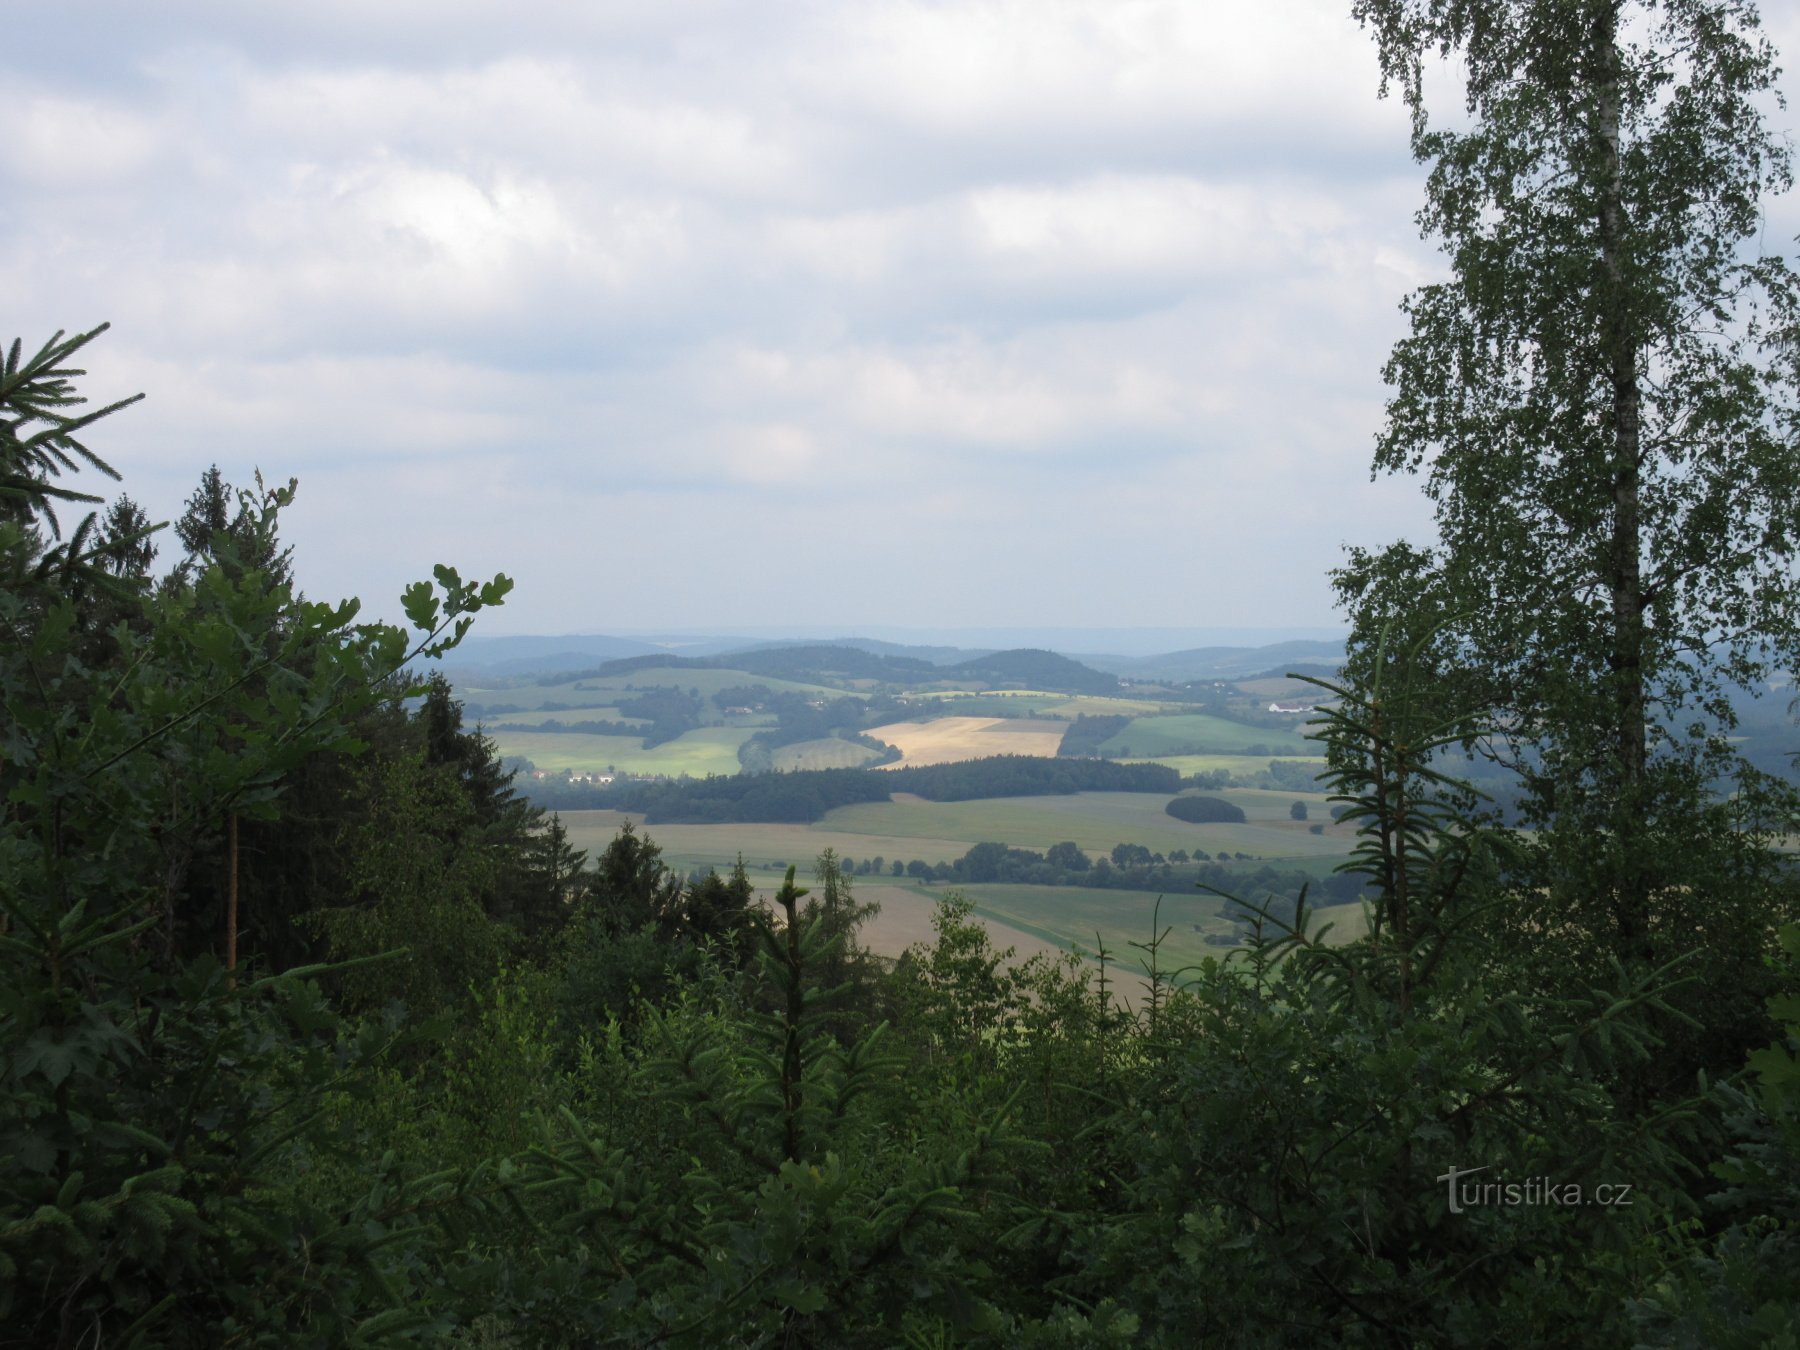 La vue depuis la tour d'observation de Drahousek